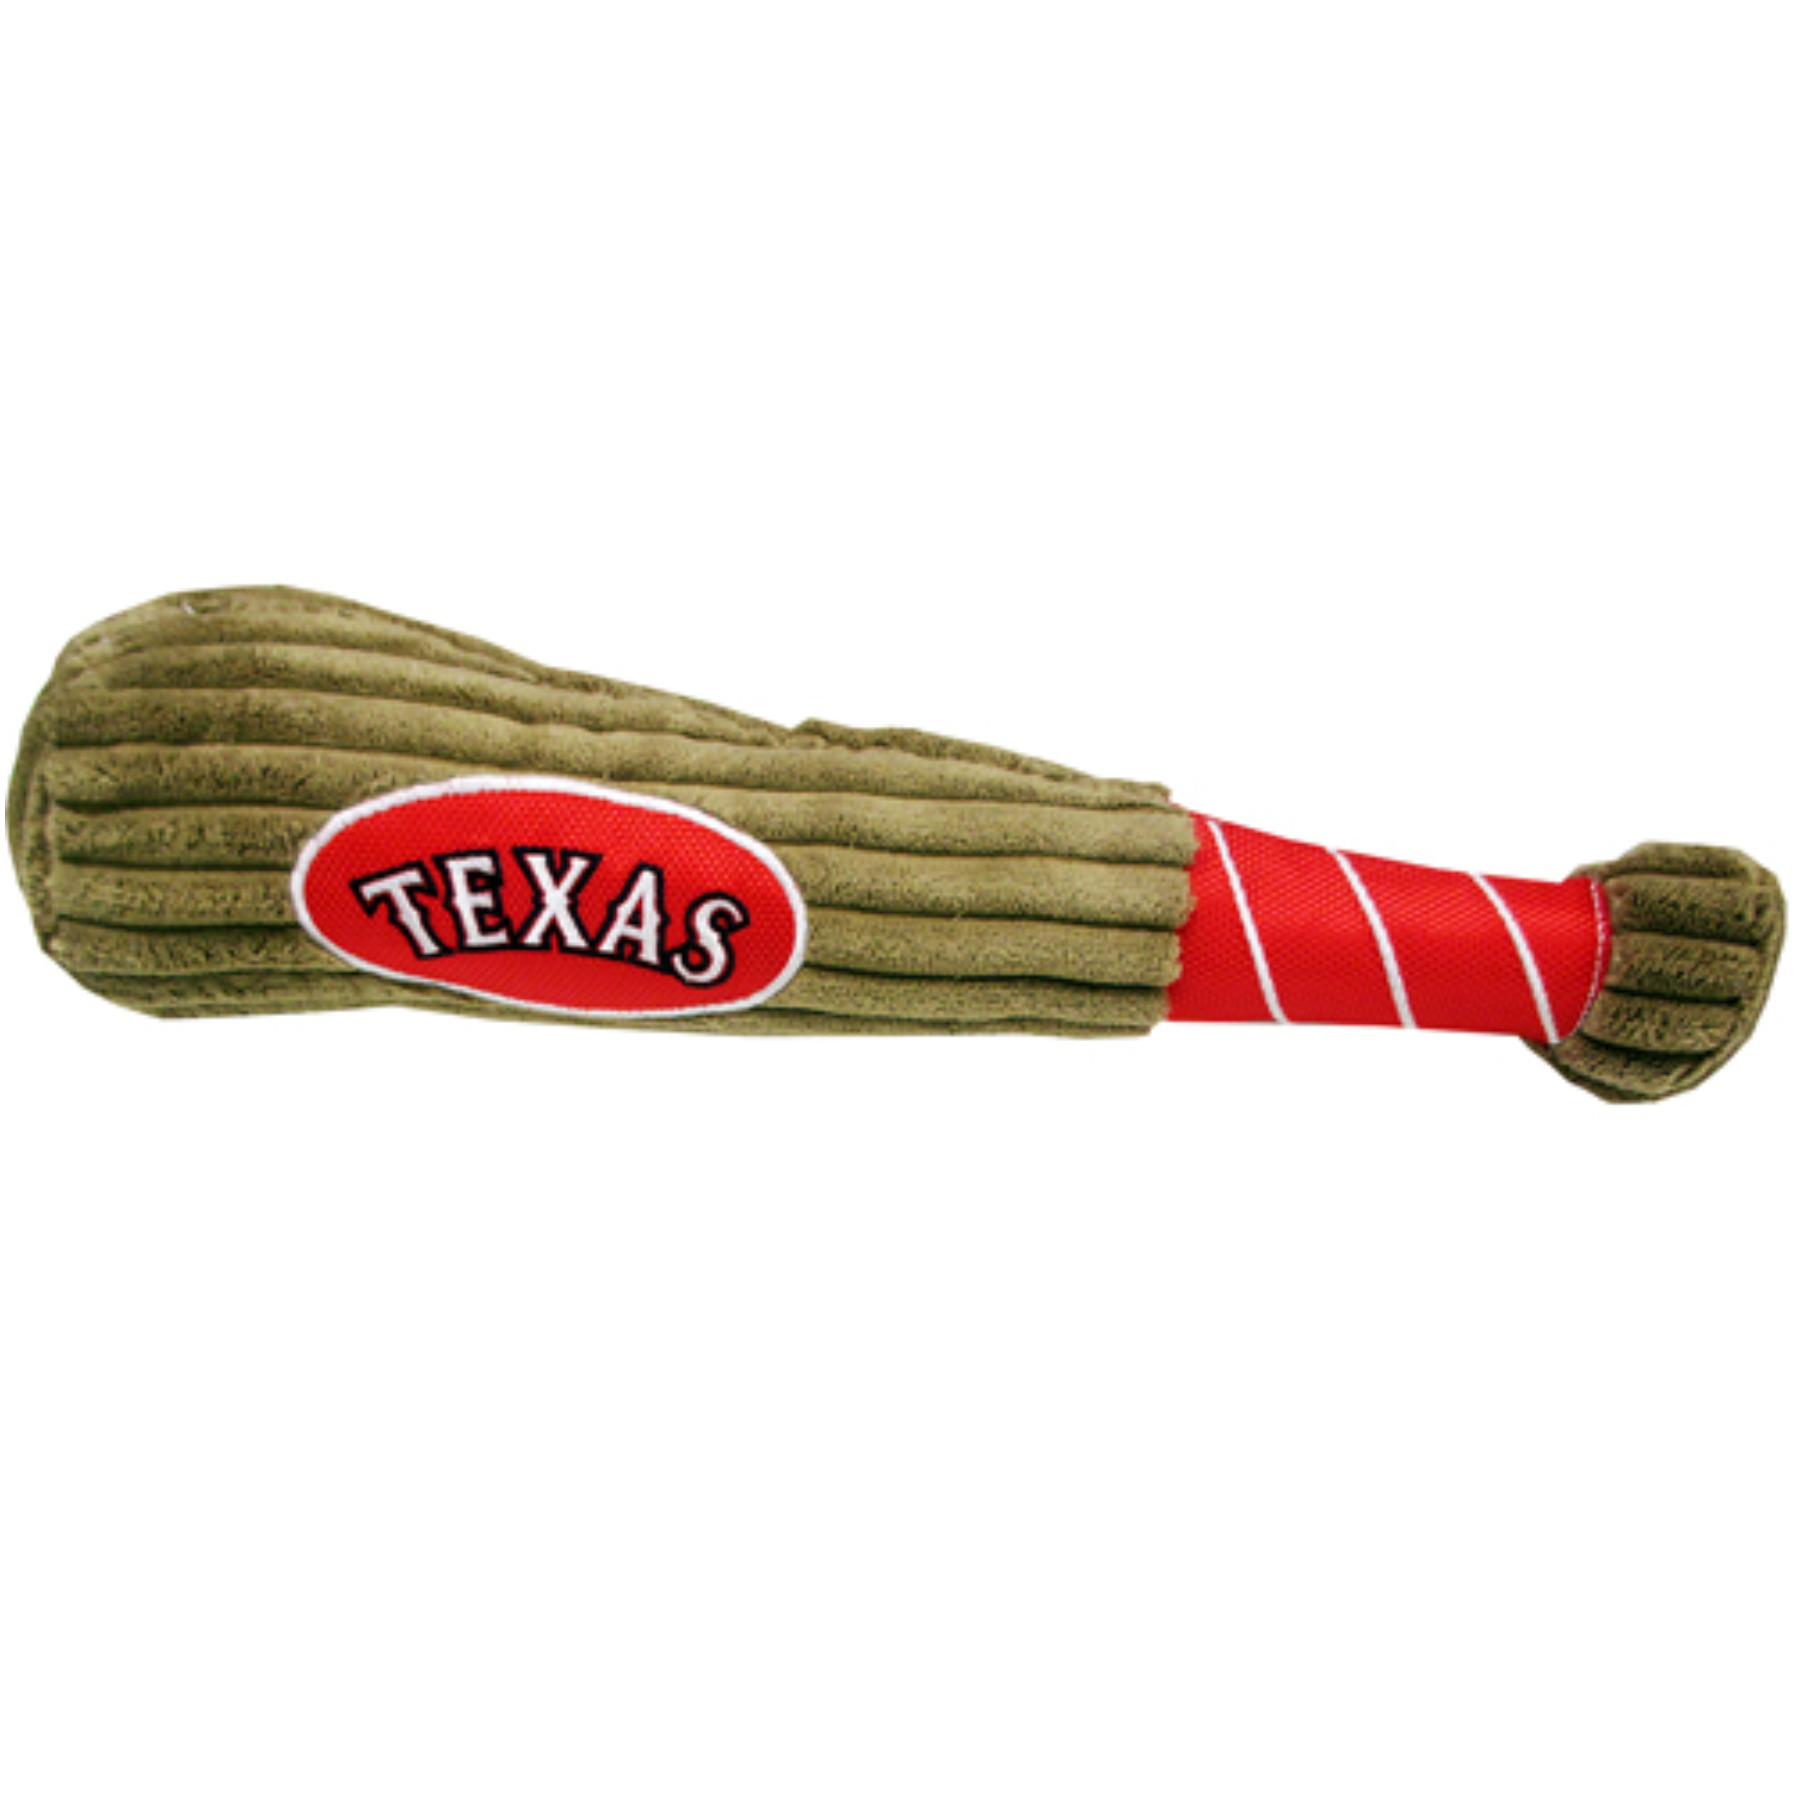 Texas Rangers Bat Toy